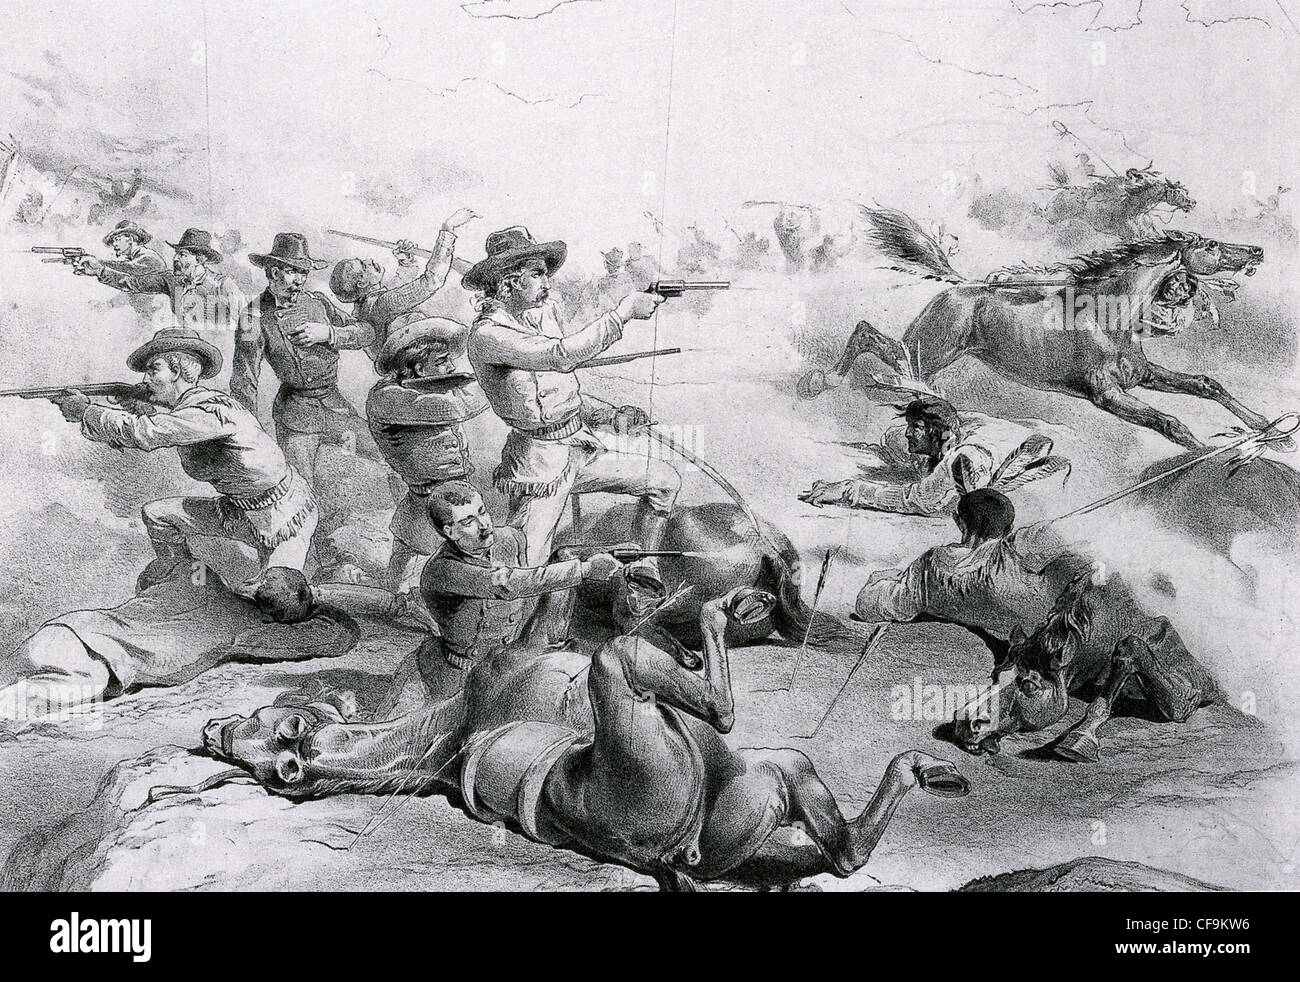 Schlacht von THE LITTLE BIGHORN nahe zeitgenössische Illustration des Custers letzte Gefecht am 26. Juni 1876 Stockfoto